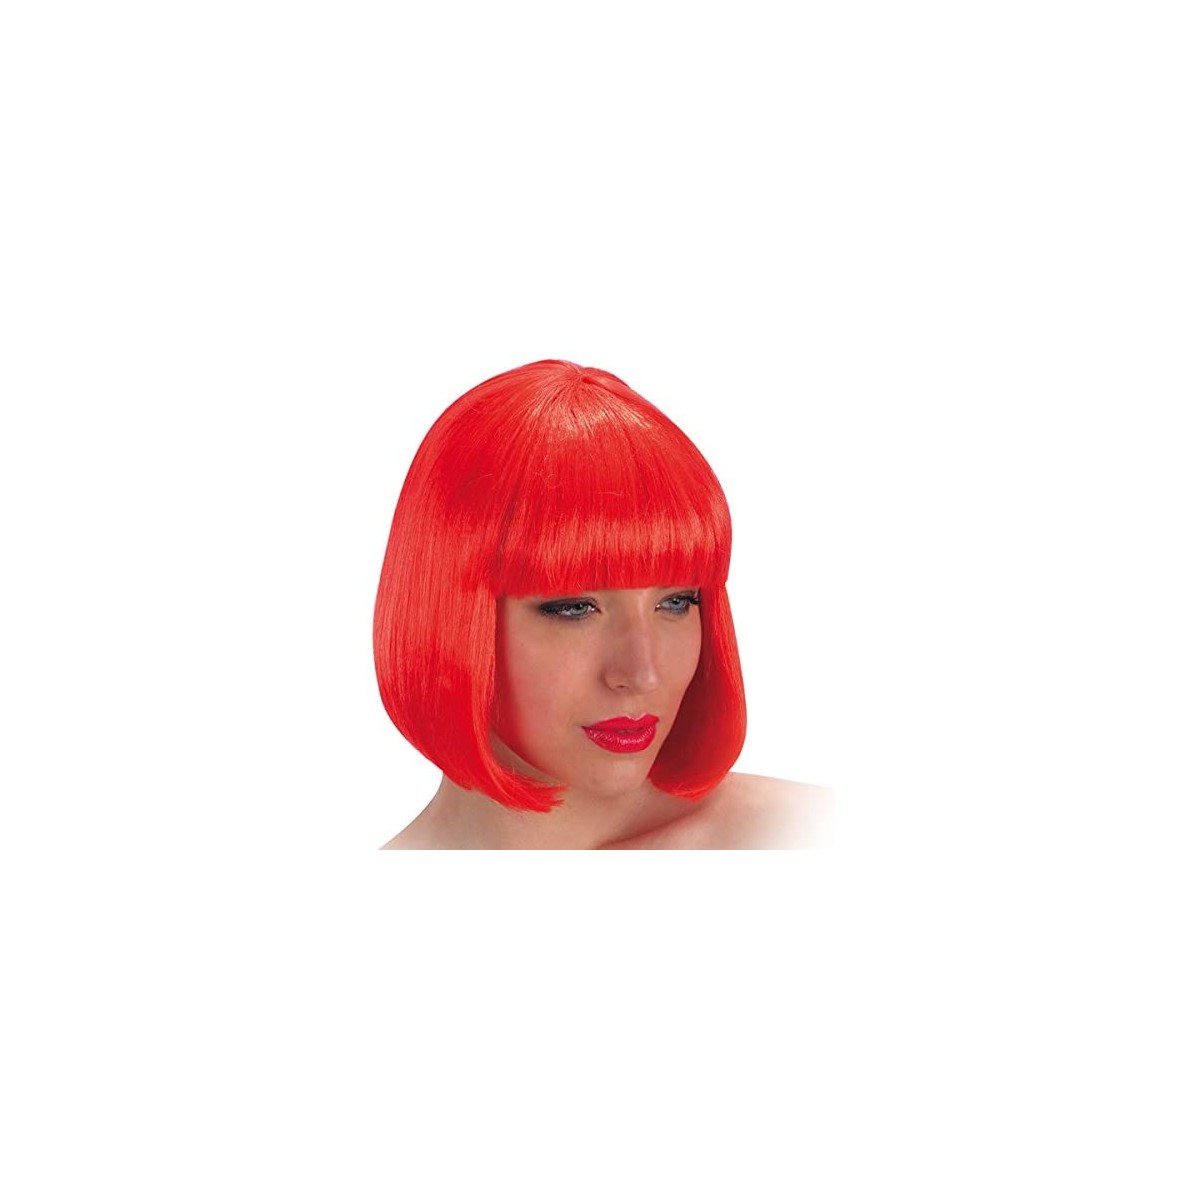 Parrucca Pin Up rossa con frangia, travestimenti anni 40